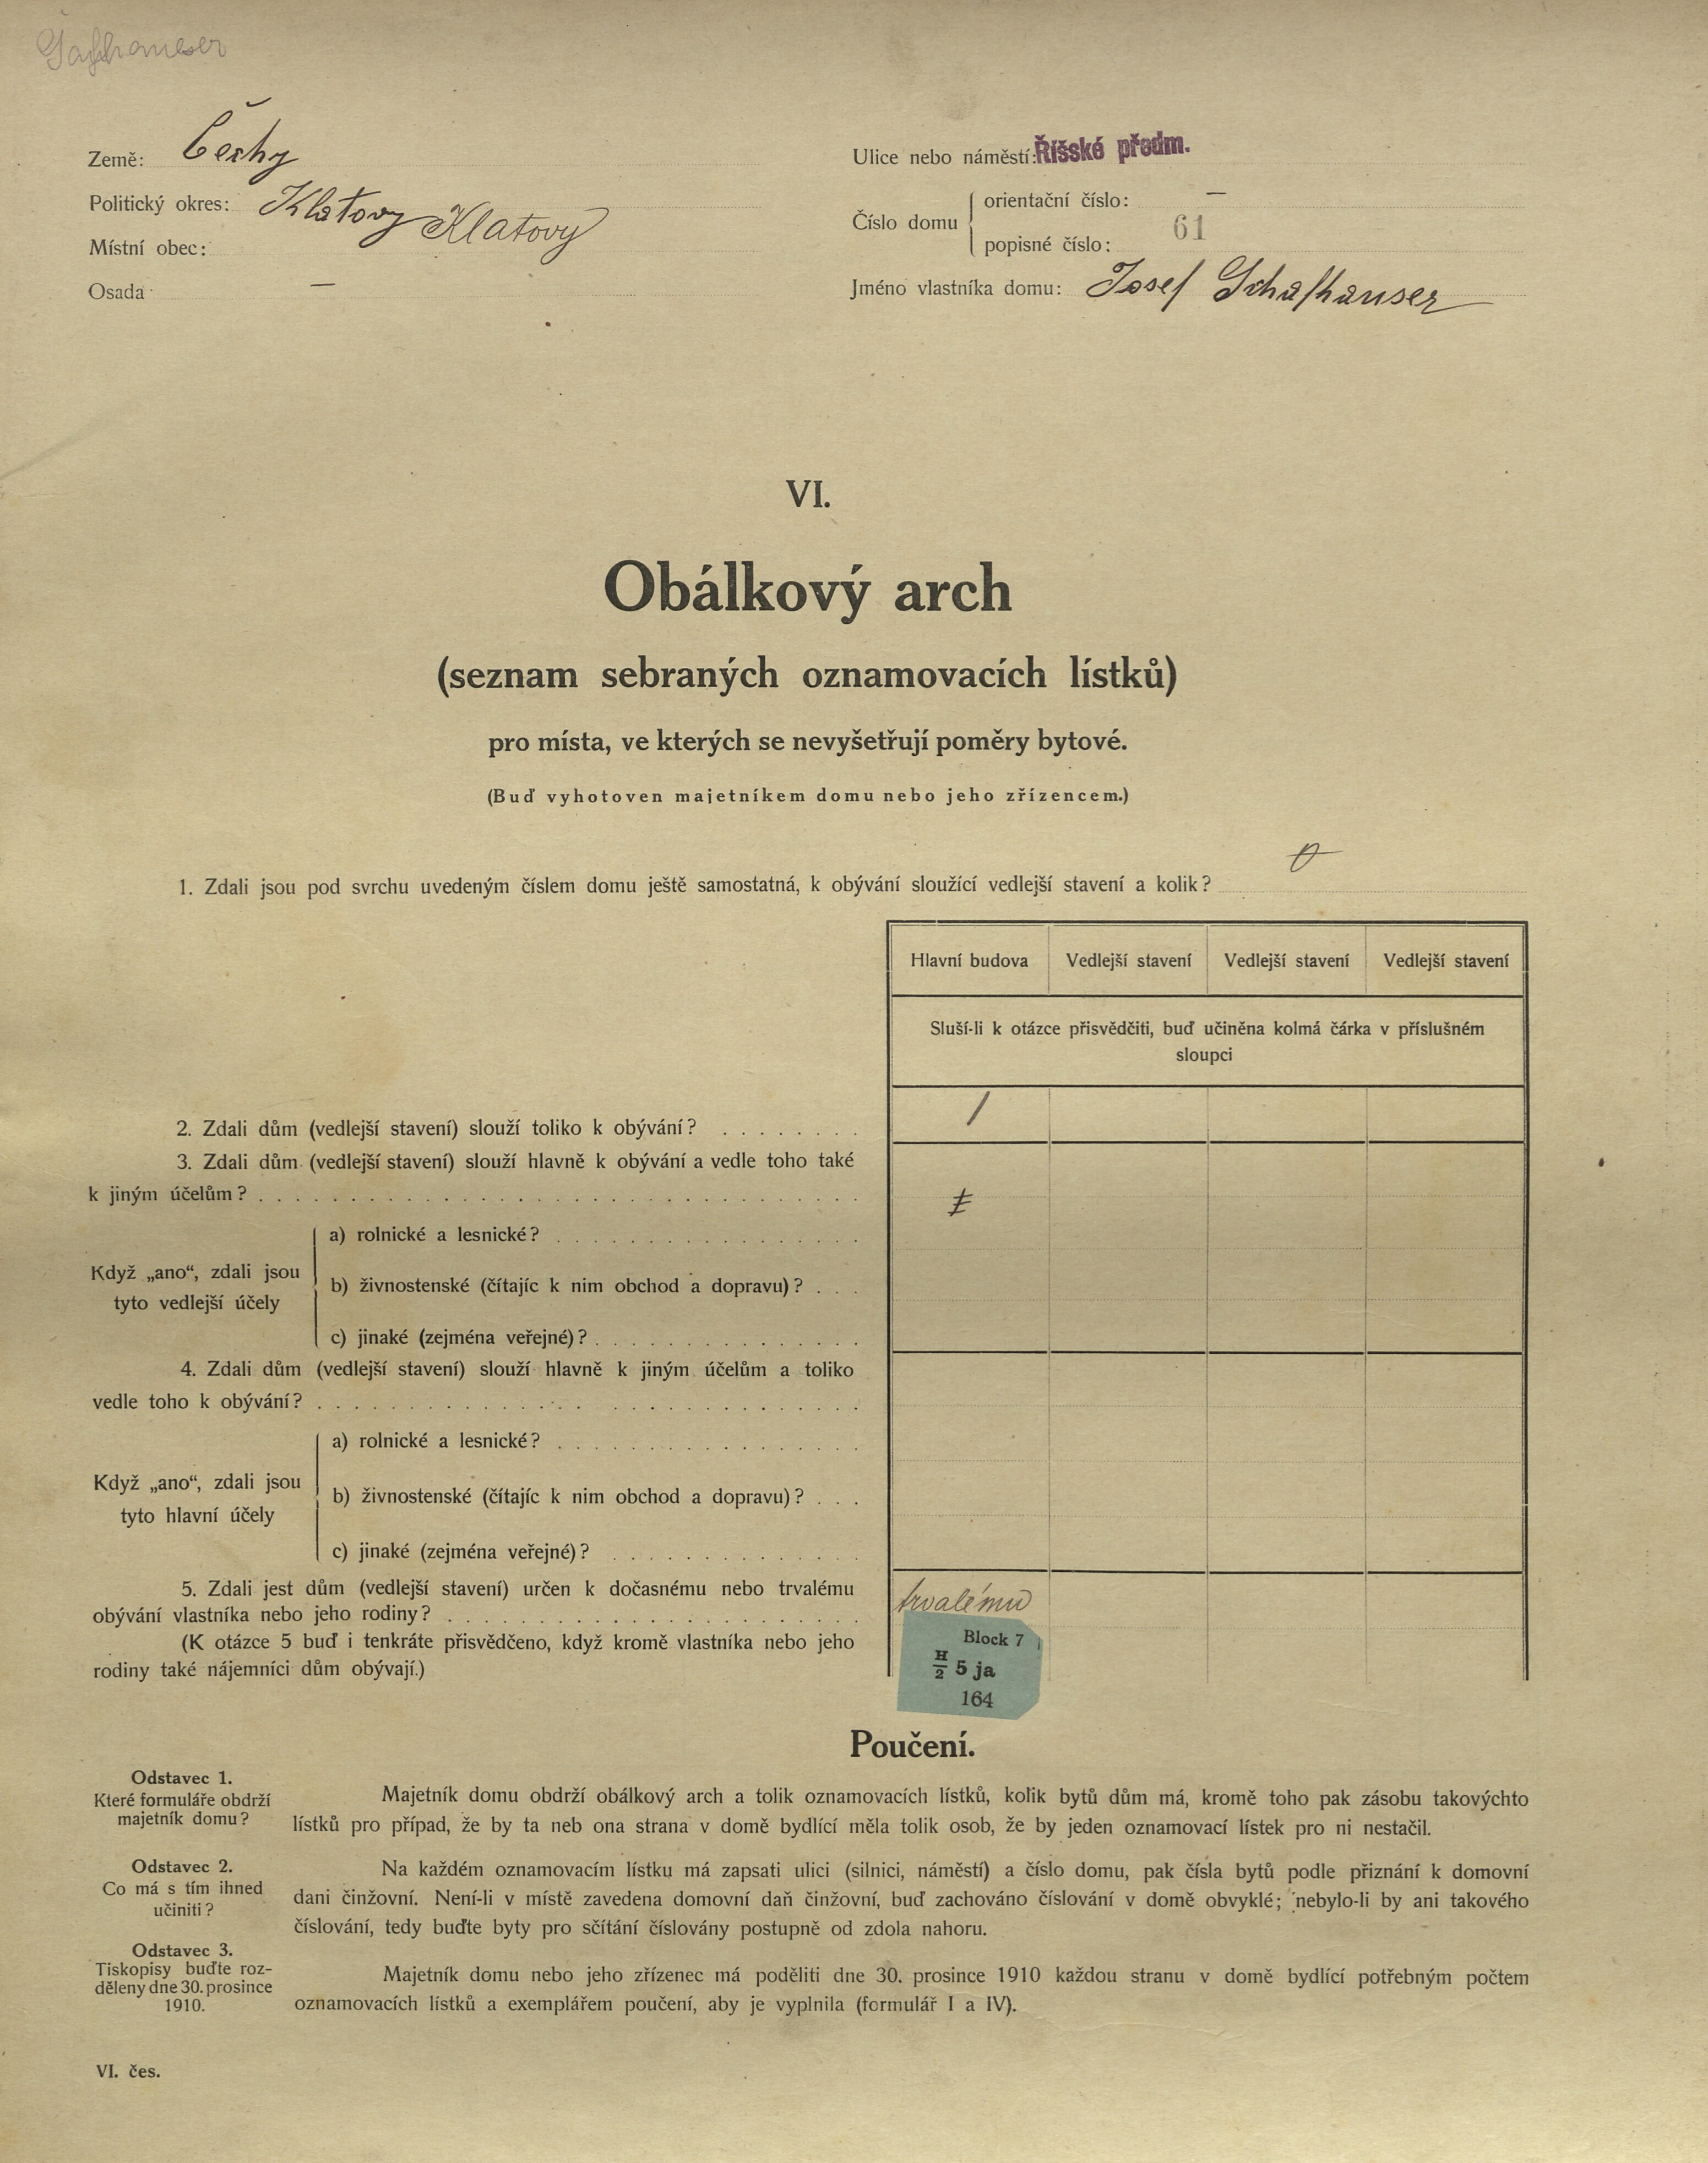 1. soap-kt_01159_census-1910-klatovy-risske-predmesti-cp061_0010